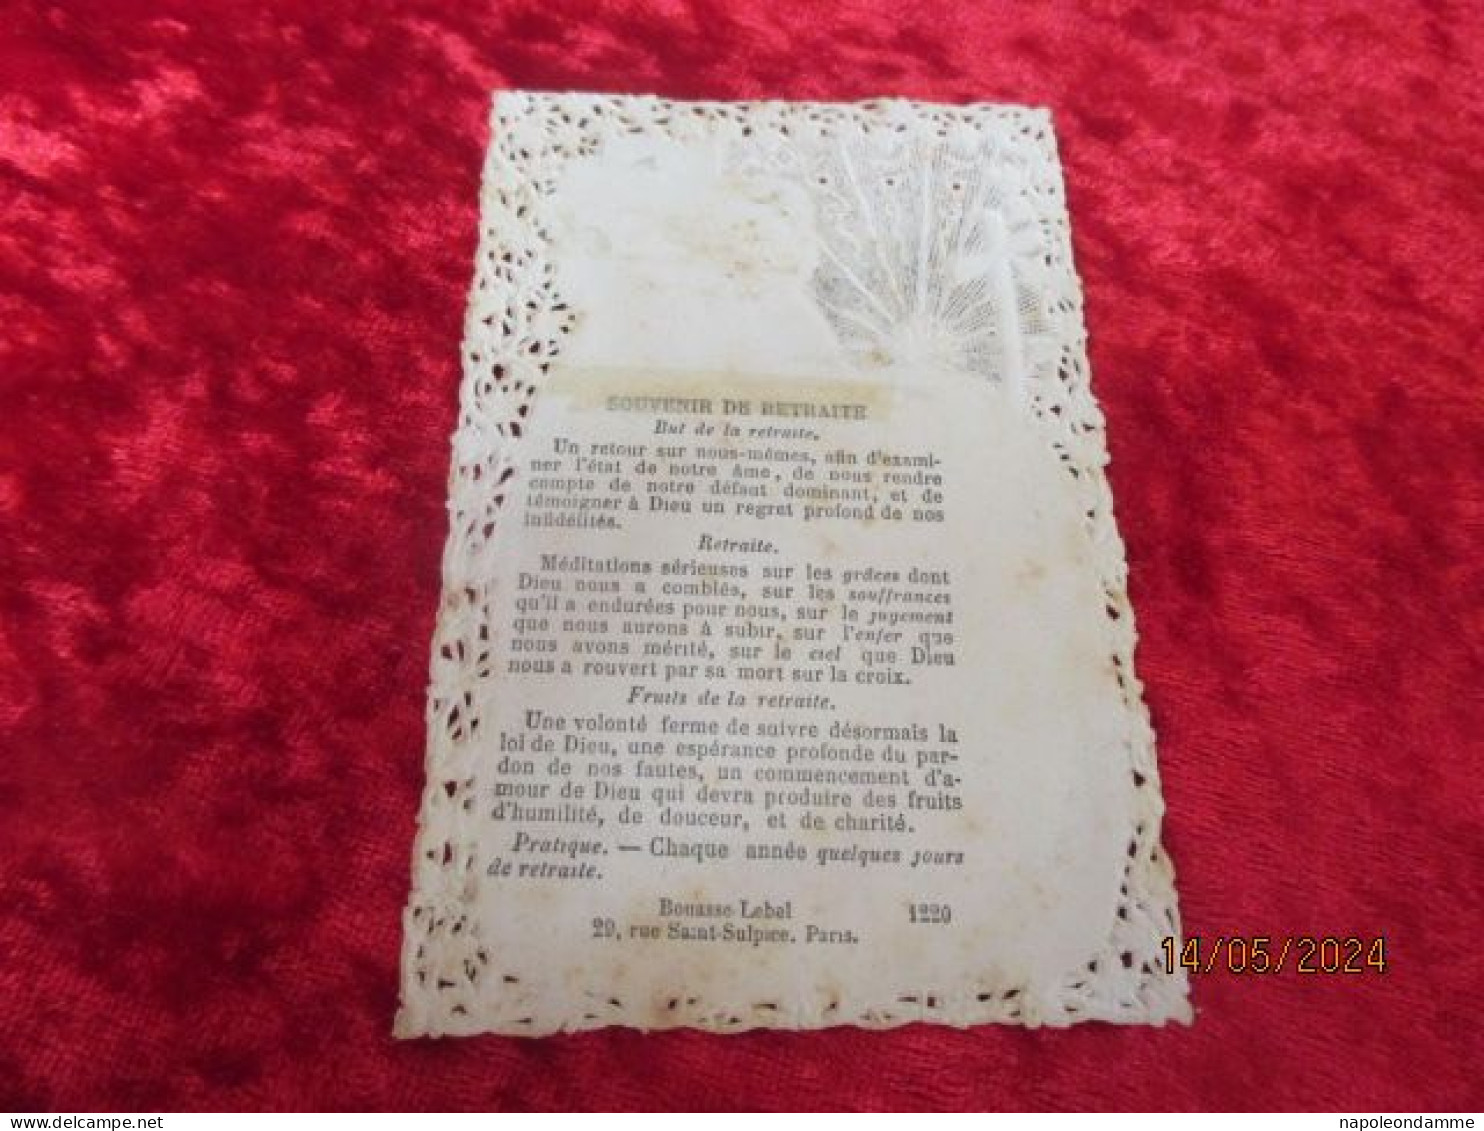 Holy Card Lace,kanten Prentje, Santino, Souvenir De Retraite Edit Bouasse Lebel Nr 1220 - Devotion Images